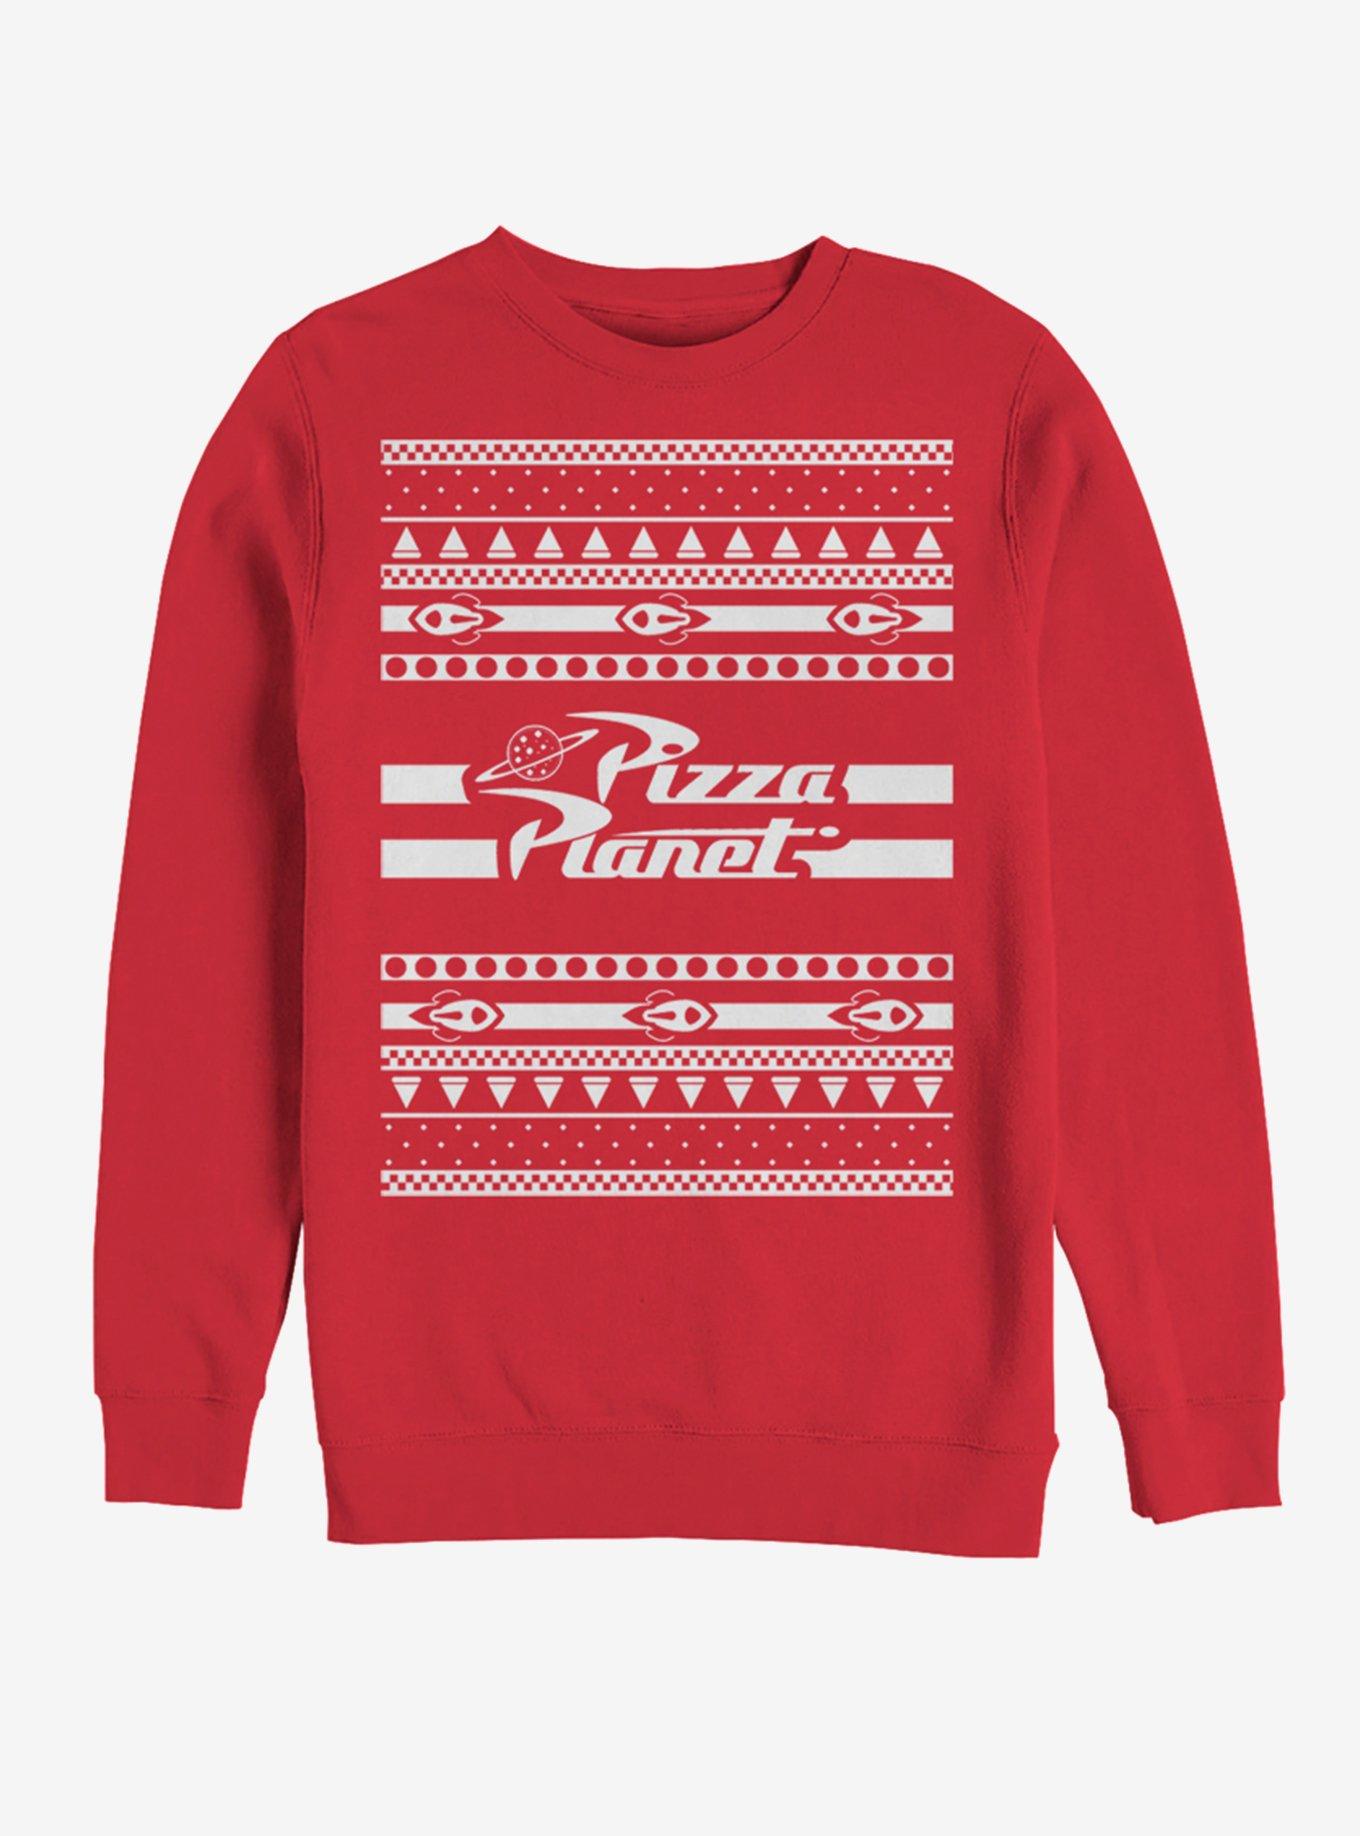 Pizza Dude’s Got 30 Seconds Ninja Turtles Ugly Christmas Sweater | Pizza Dude’s Got 30 Seconds Ninja Turtles Christmas Sweatshirt for Women Men 2XL